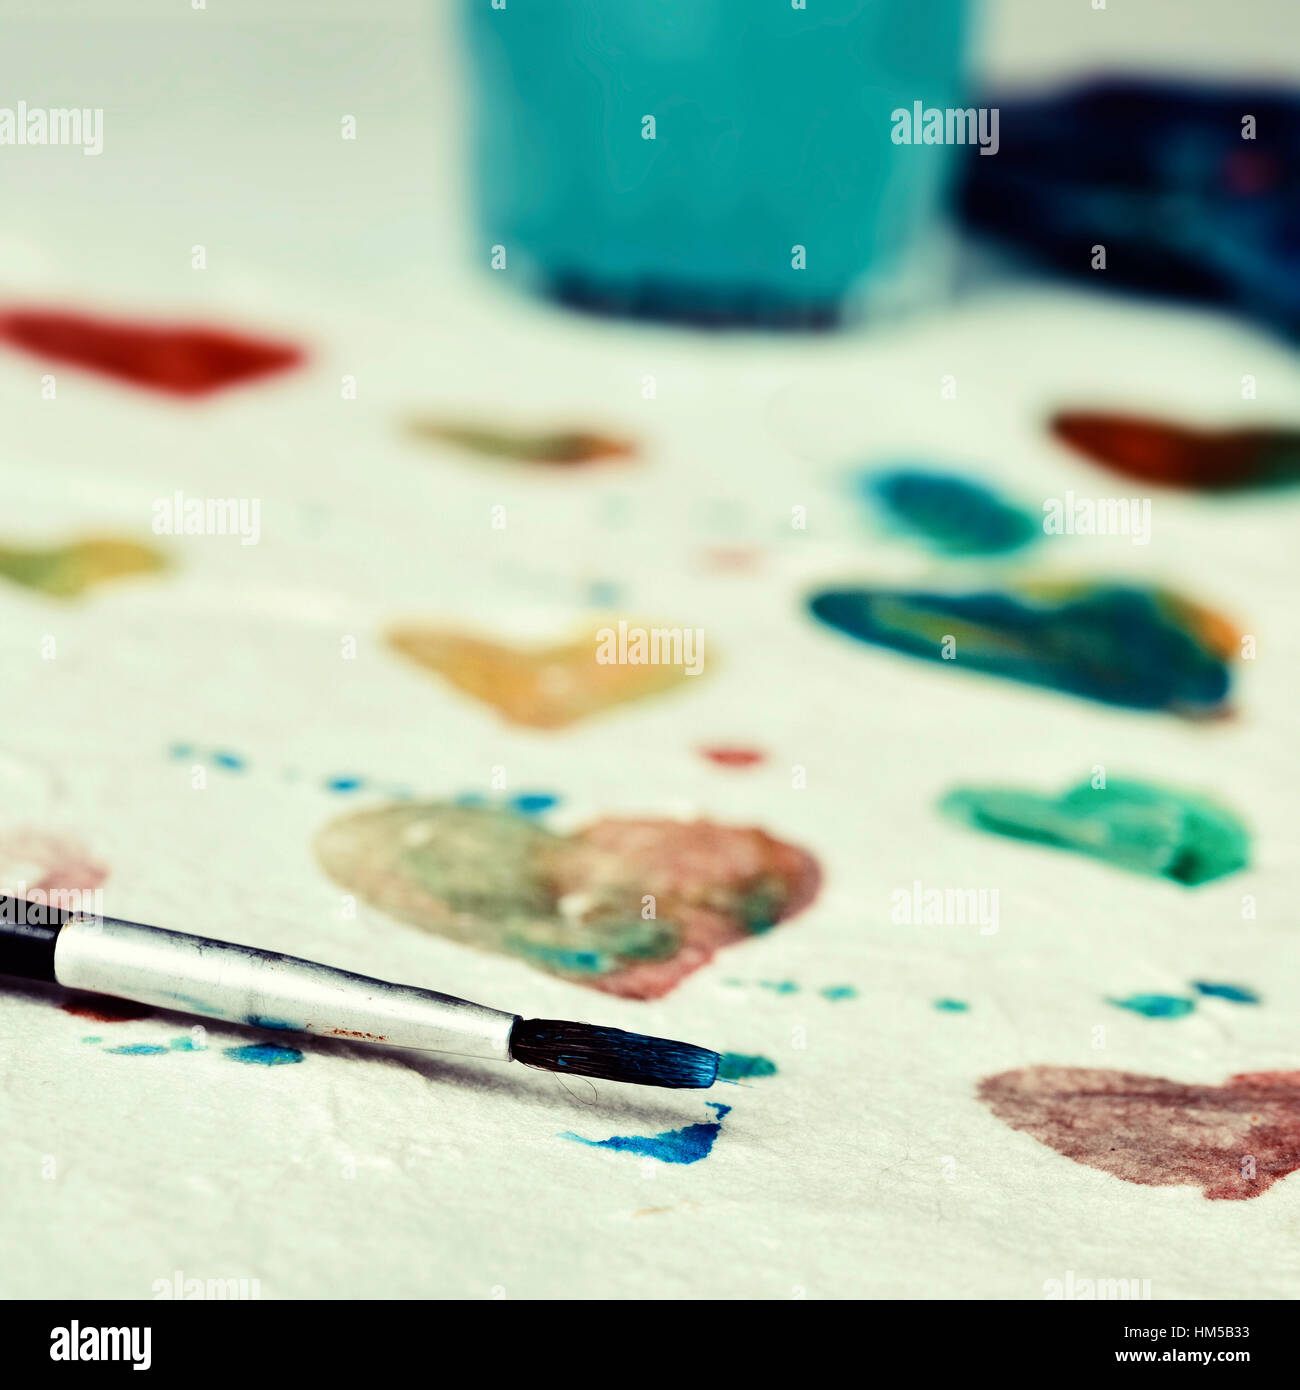 Primo piano di un pezzo di carta con alcuni cuori di colori diversi dipinti con vernice ad acquerello Foto Stock